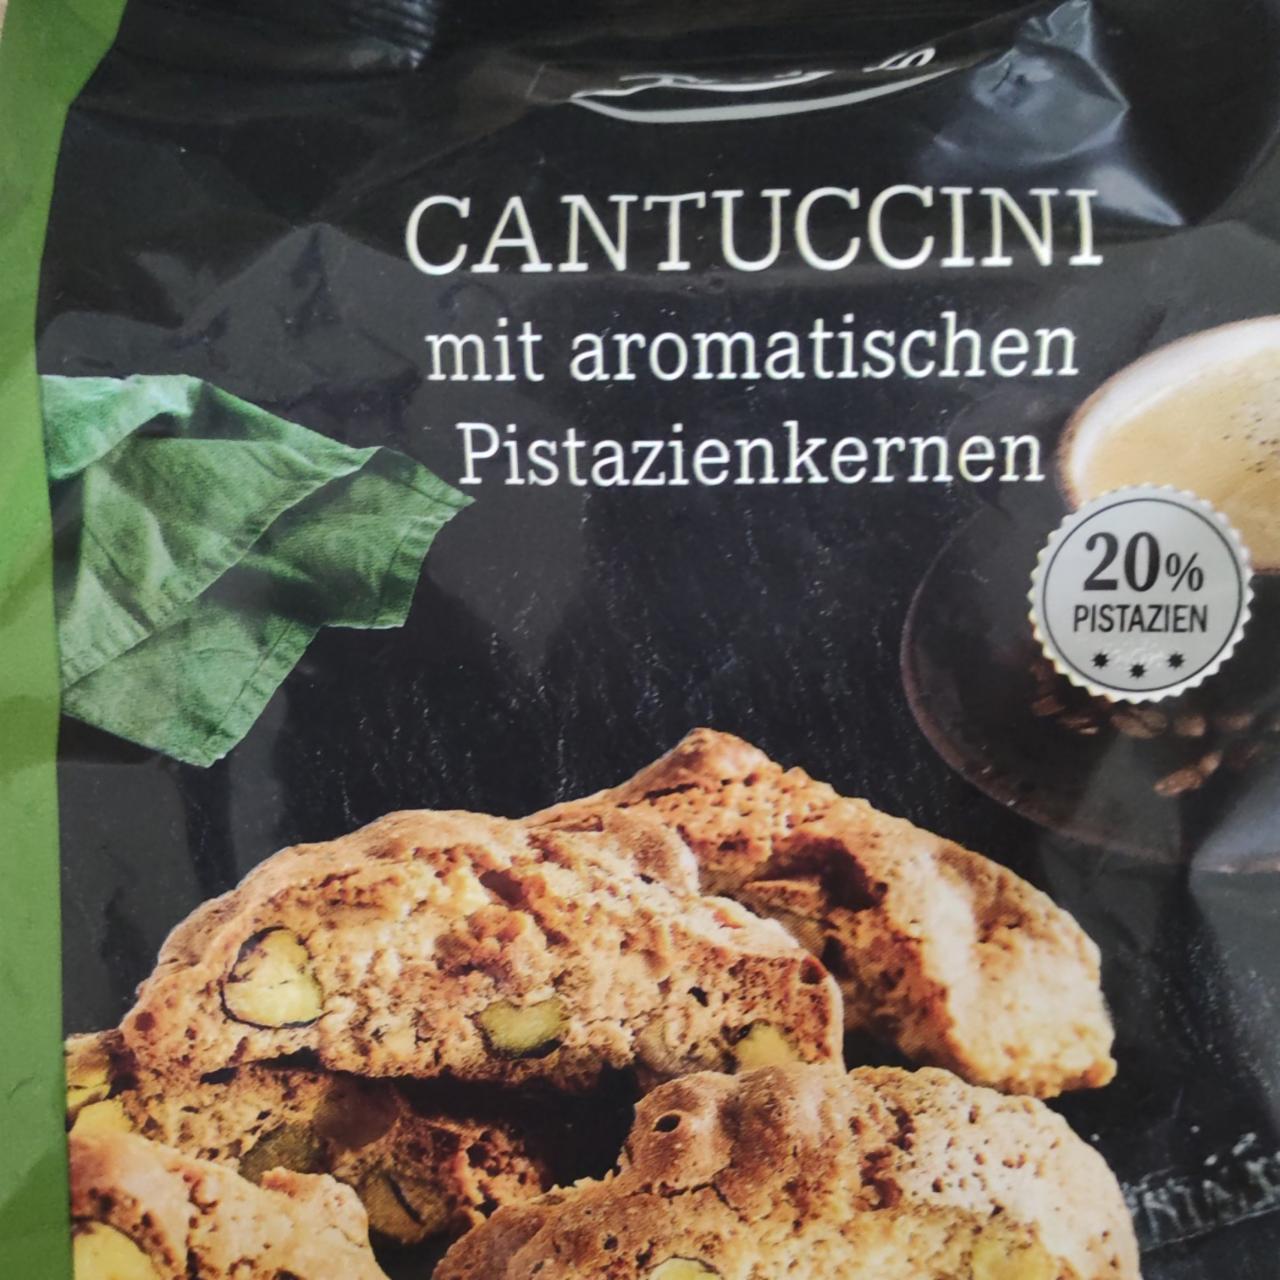 Fotografie - Cantuccini mit aromatischen Pistazienkernen Deluxe